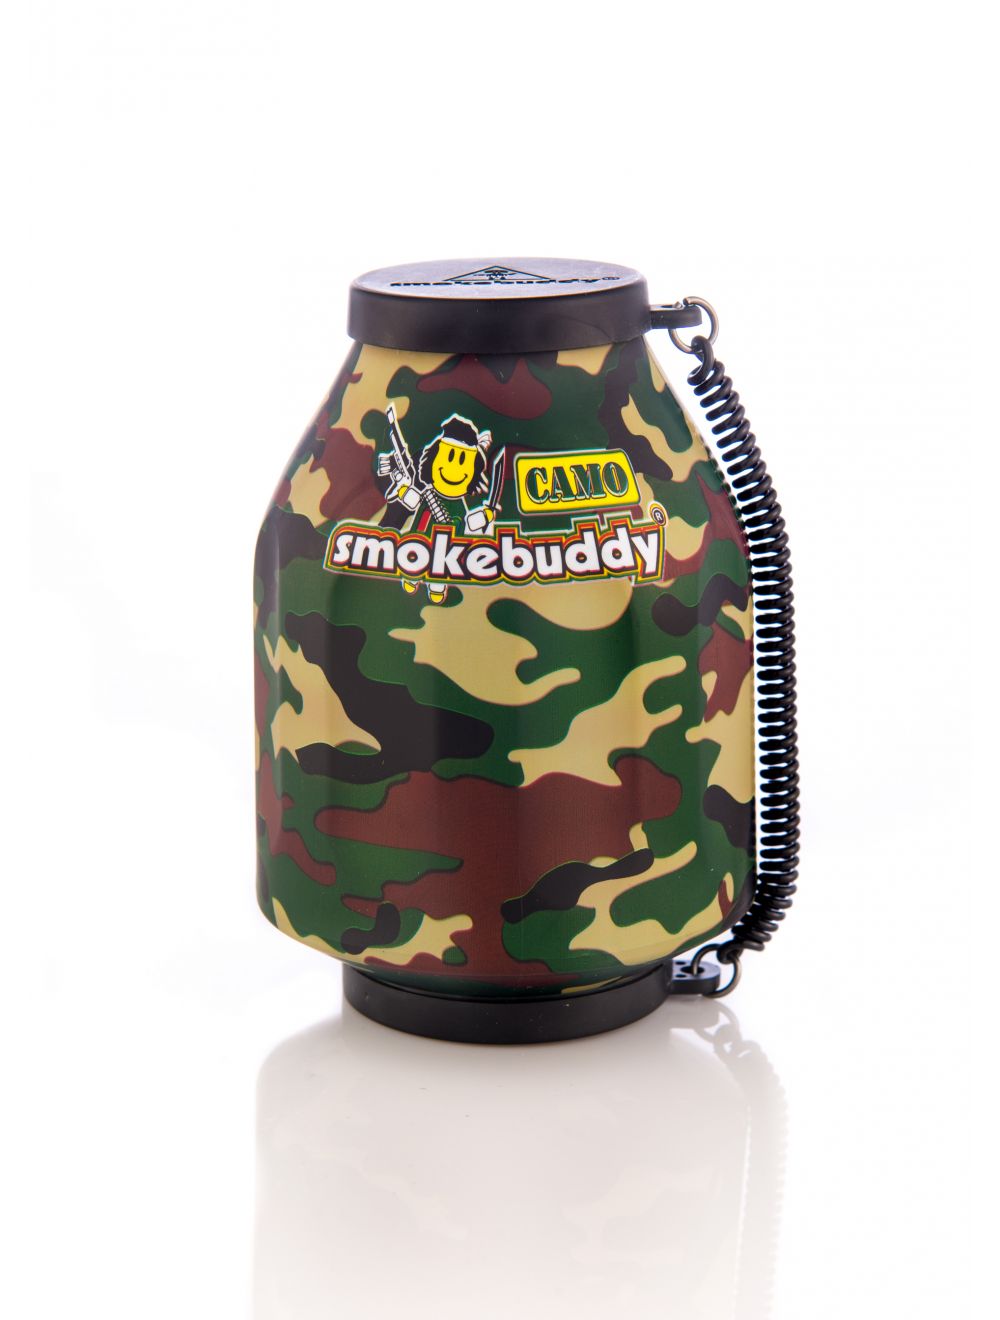 Smokebuddy' Original Personal Air Filter Camo